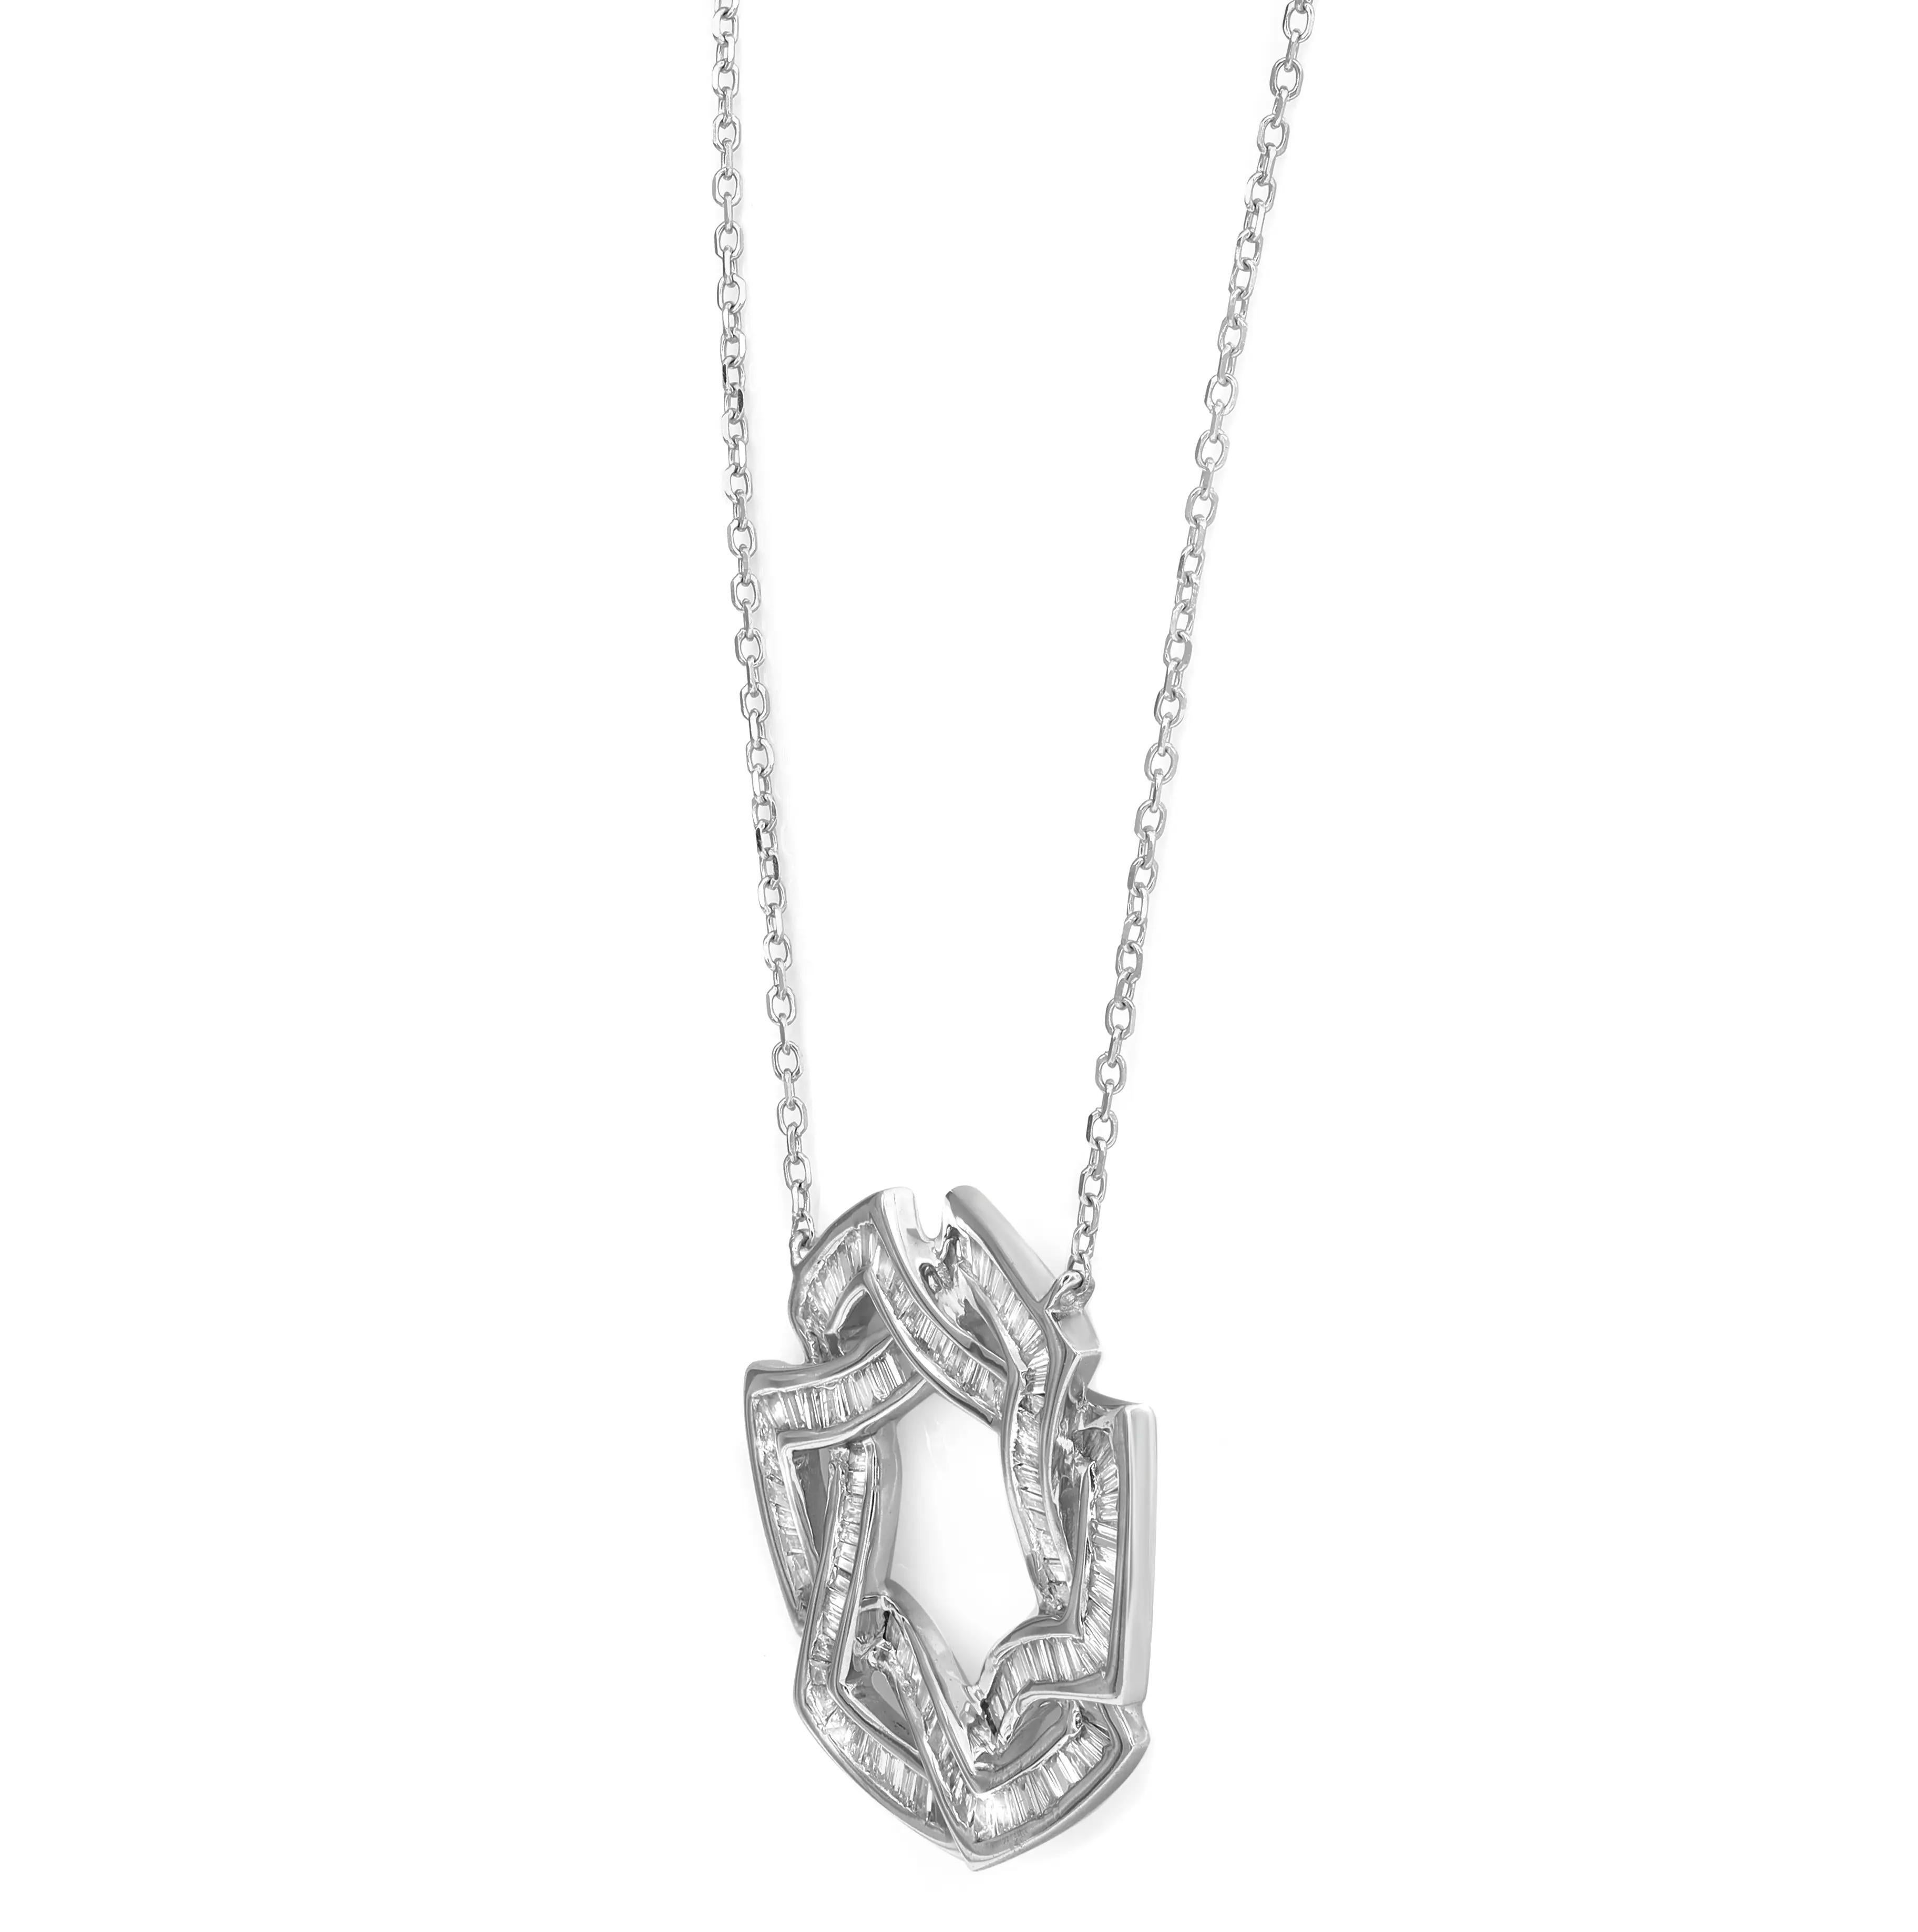 Baguette Cut Secret Circles Baguette Diamond Pendant Necklace 14K White Gold 0.60Cttw For Sale